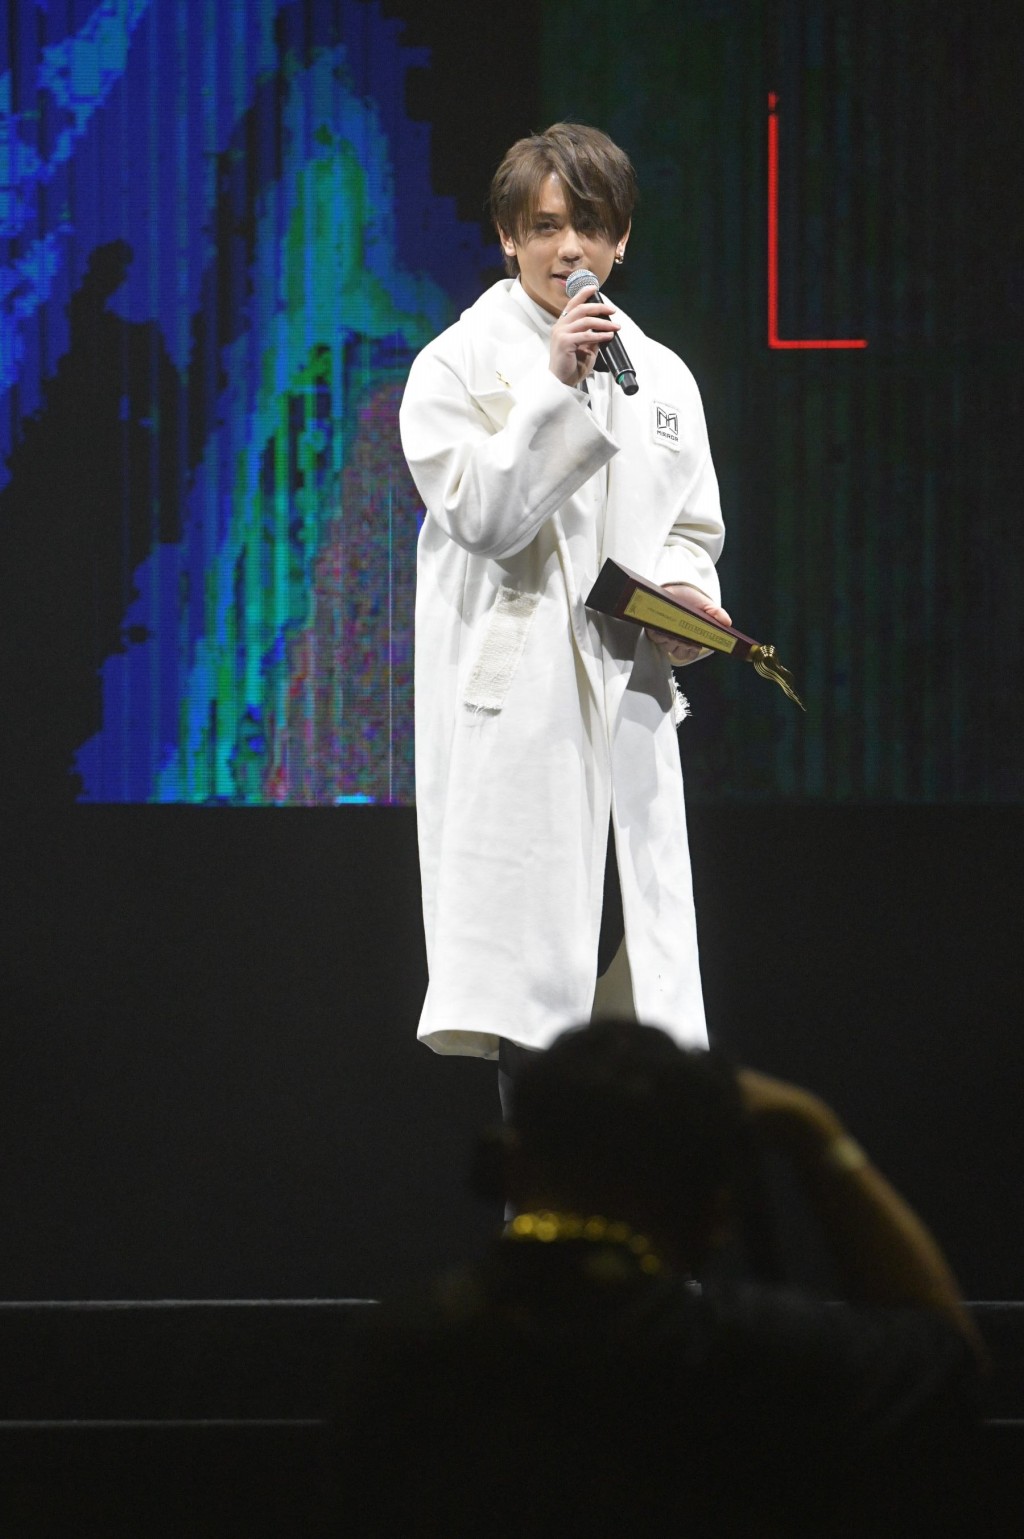 姜濤於《2021年度叱咤樂壇流行榜頒獎典禮》冧莊奪「我最喜愛的男歌手大獎」。